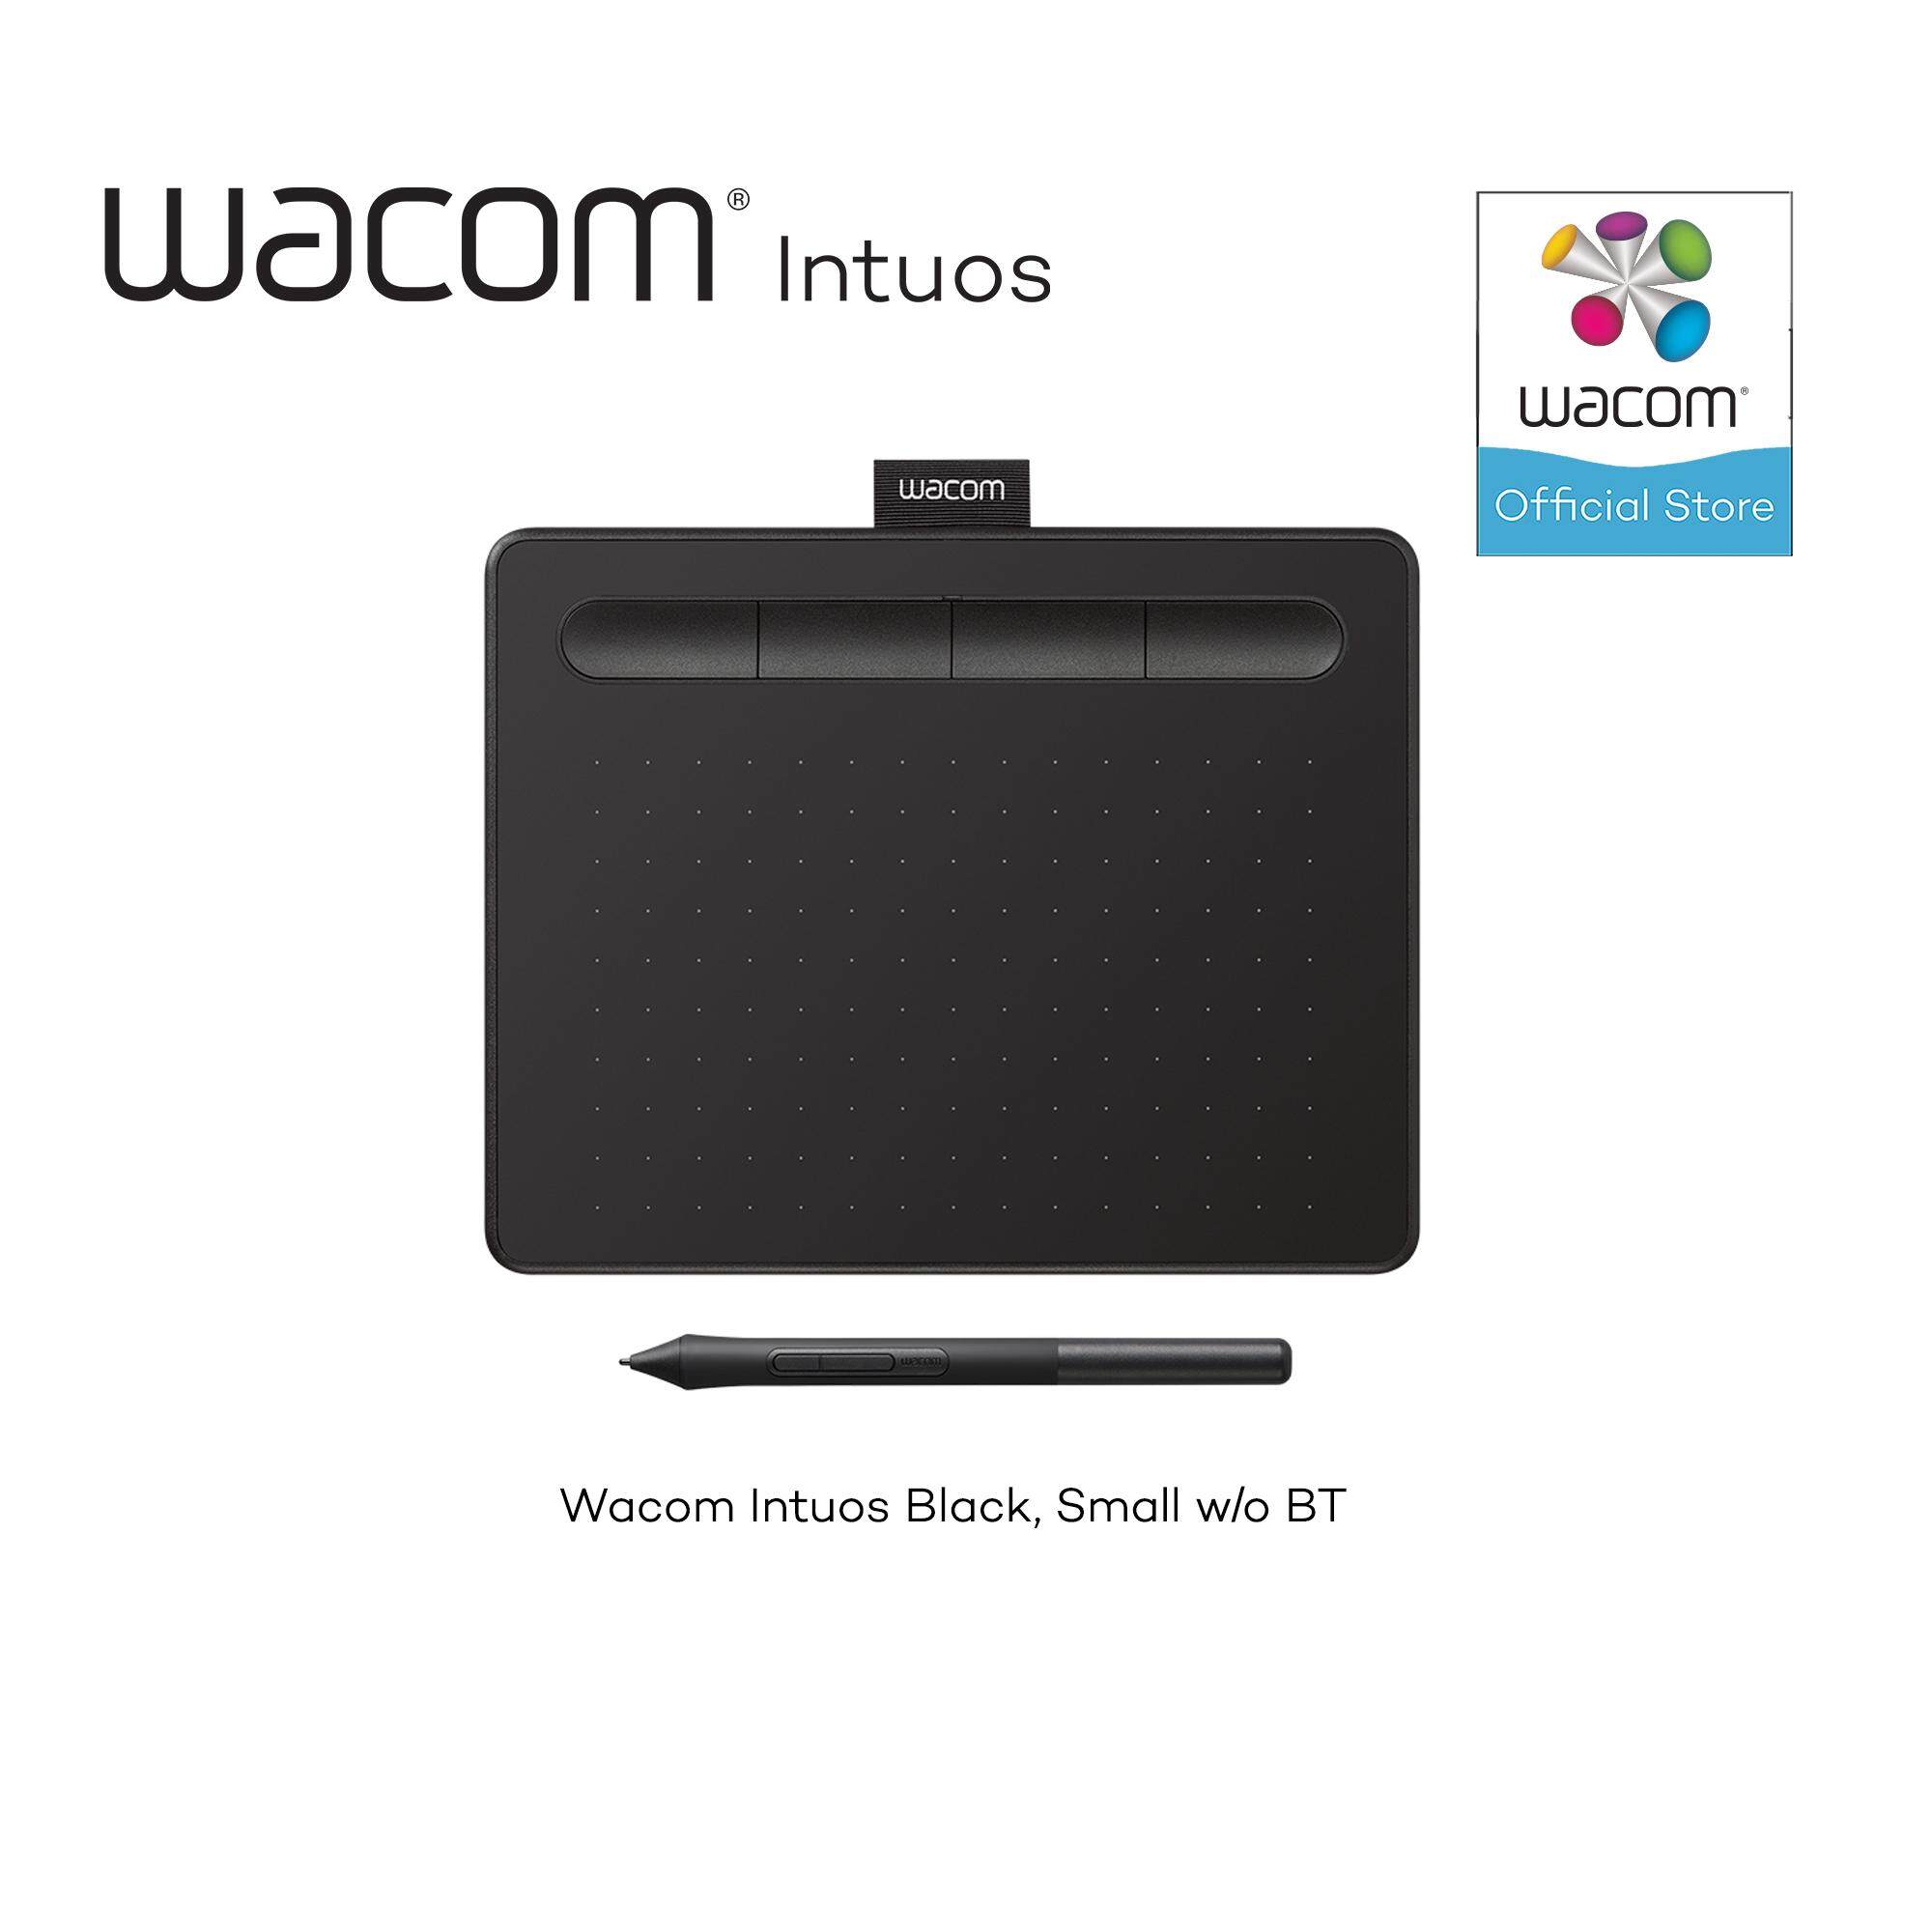 Wacom Intuos S (CTL-4100) แท็บเล็ตสำหรับวาดภาพกราฟฟิก